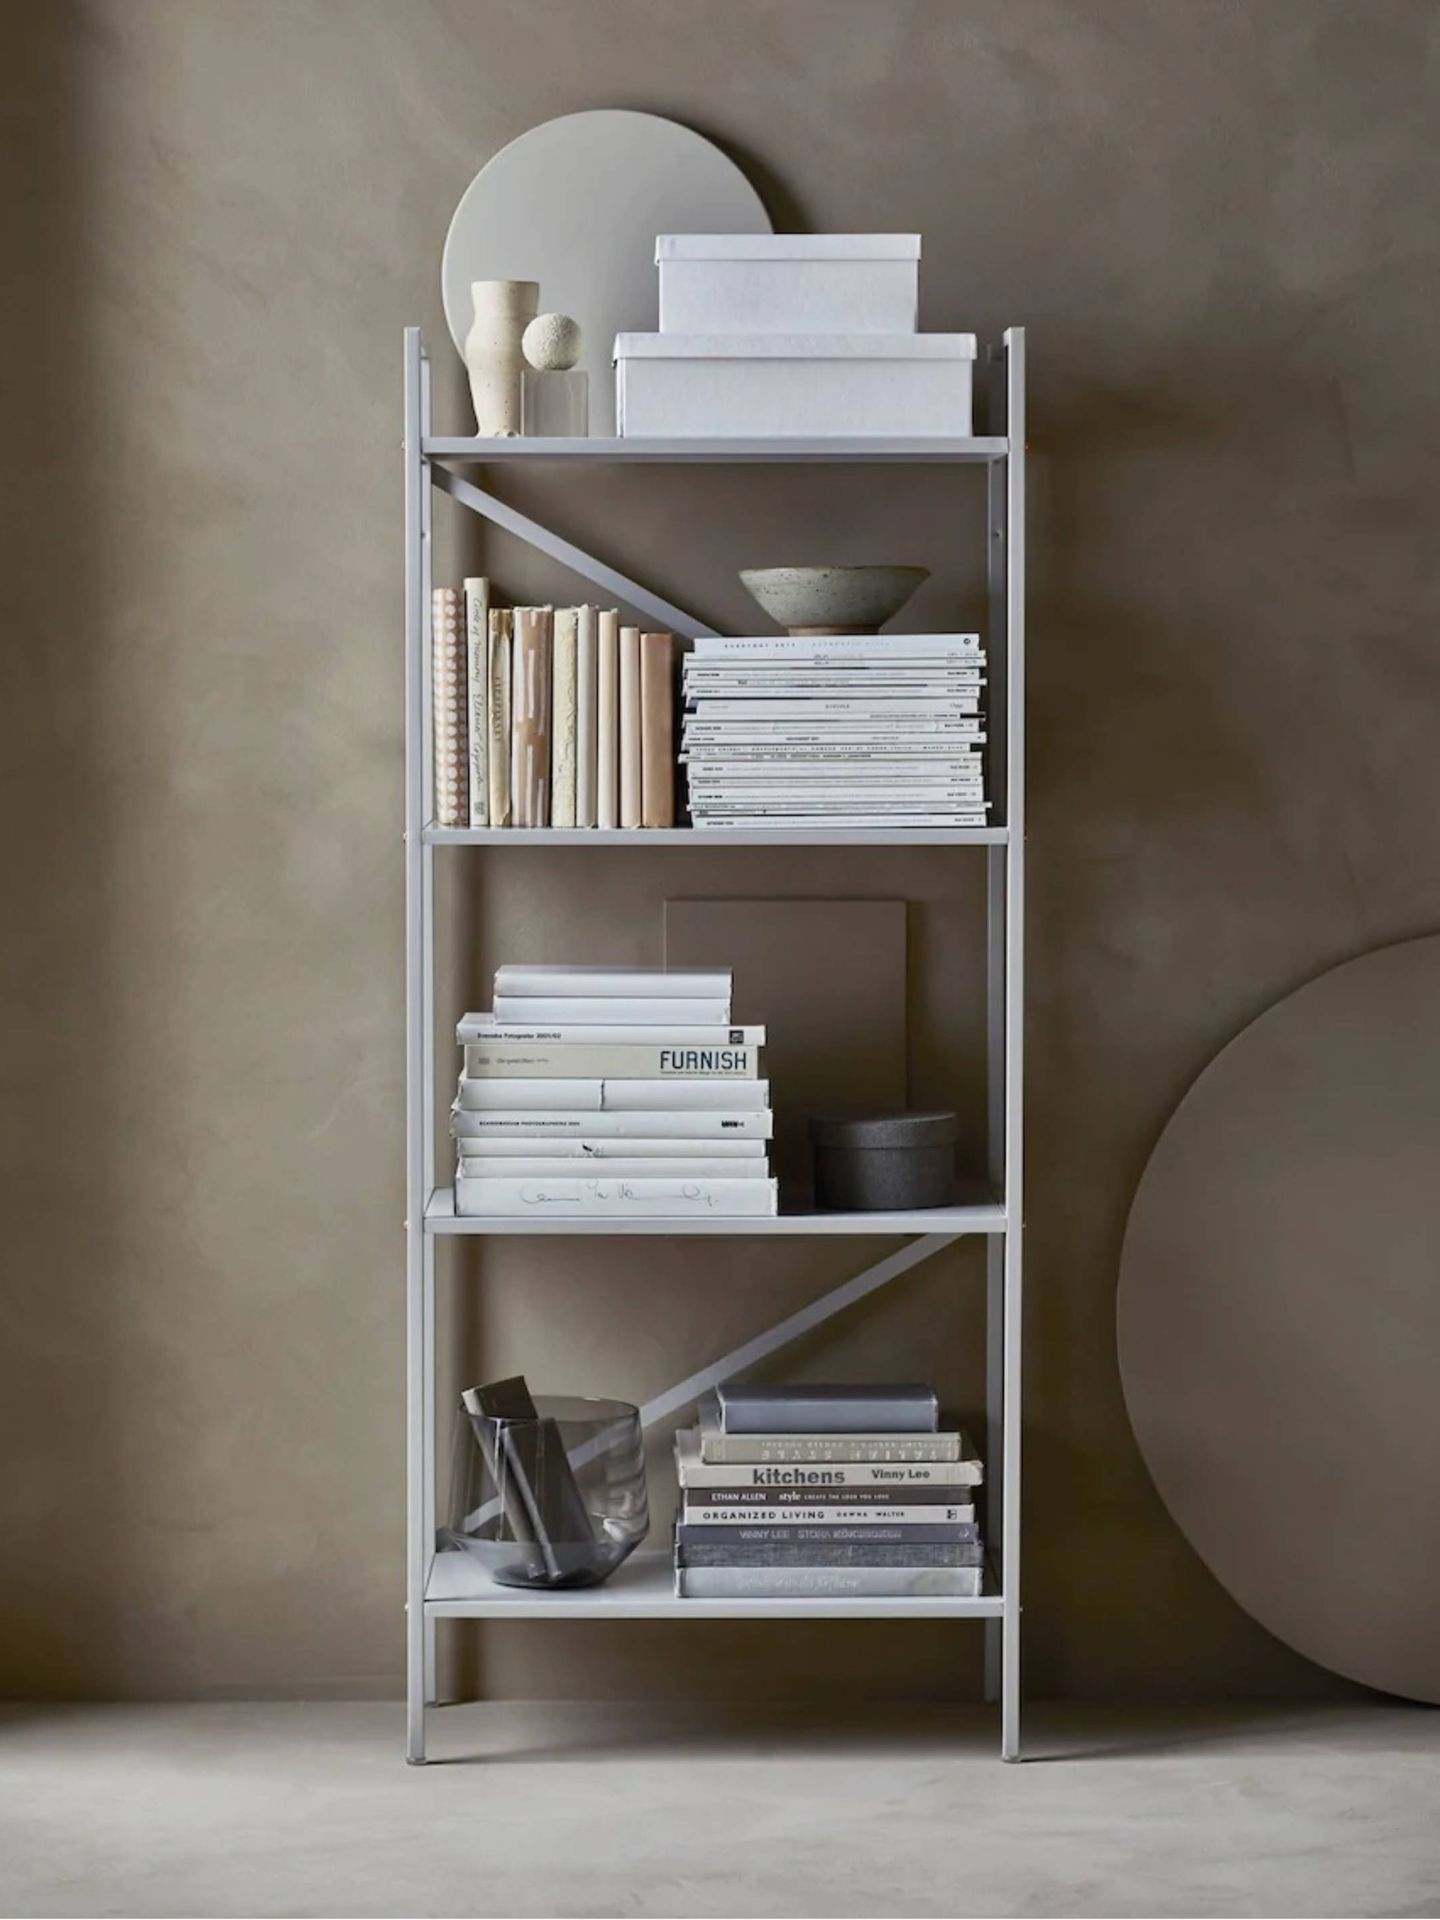 Decoración minimalista gracias a Ikea. (Cortesía)